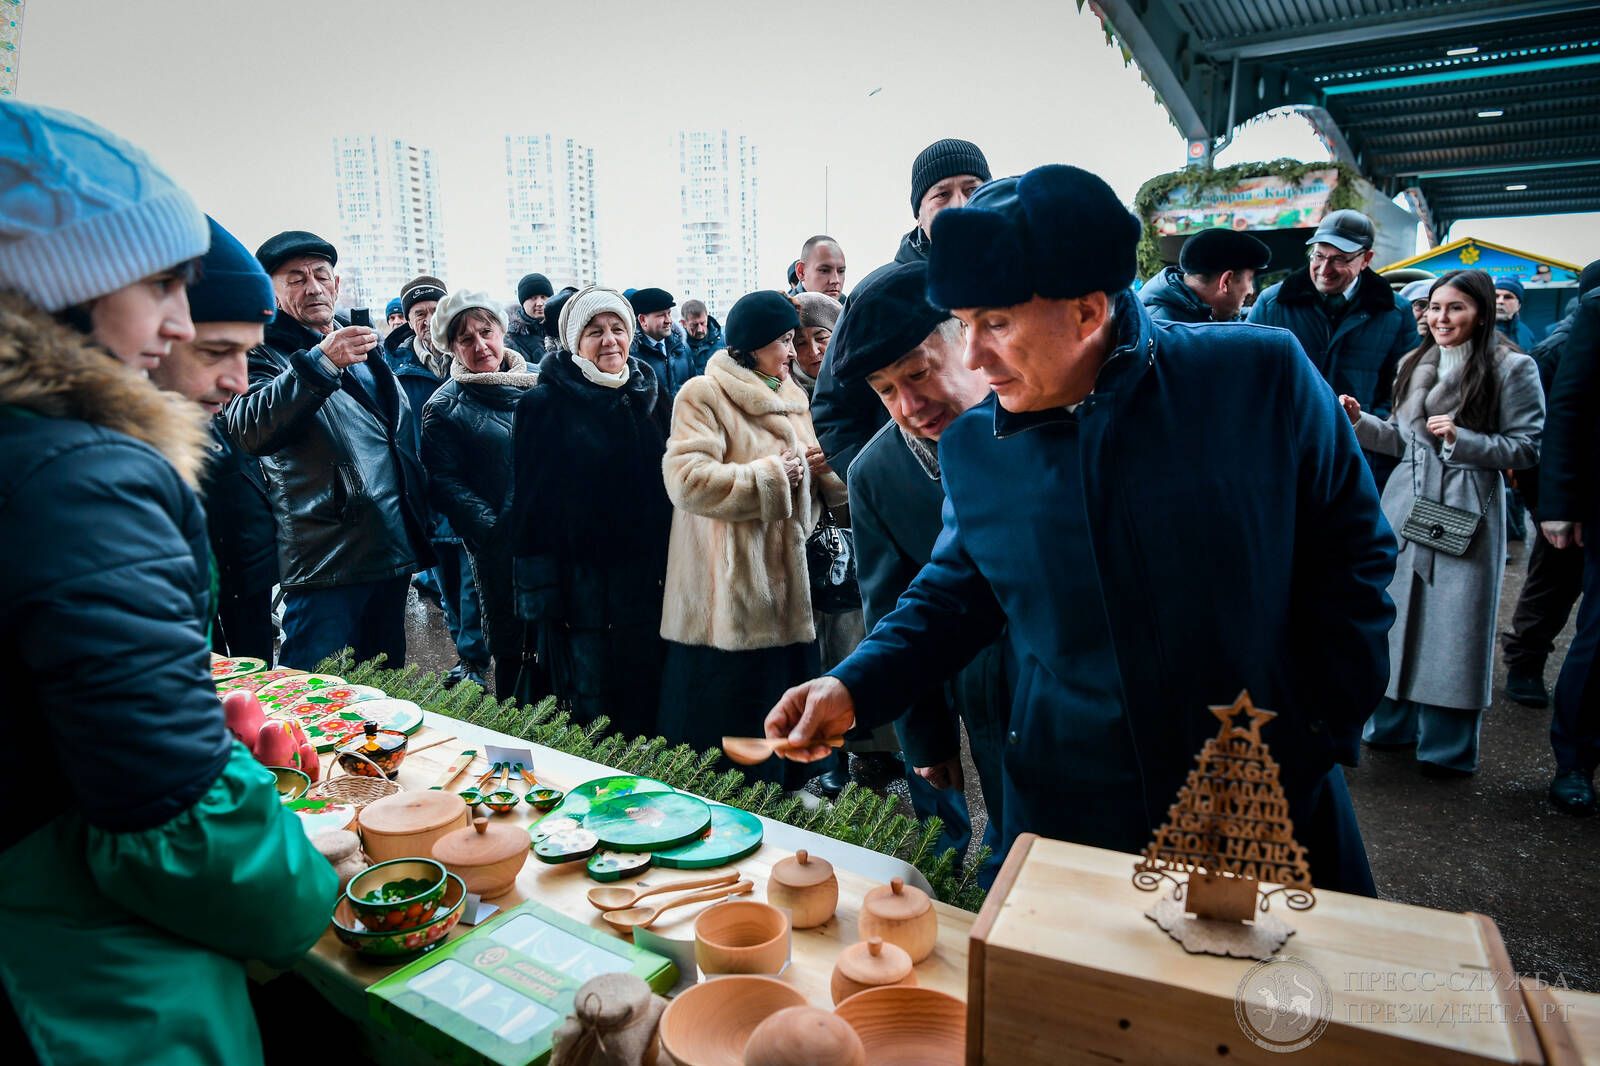 Рөстәм Миңнеханов “Казан” агросәнәгать паркында авыл хуҗалыгы ярминкәсендә булды